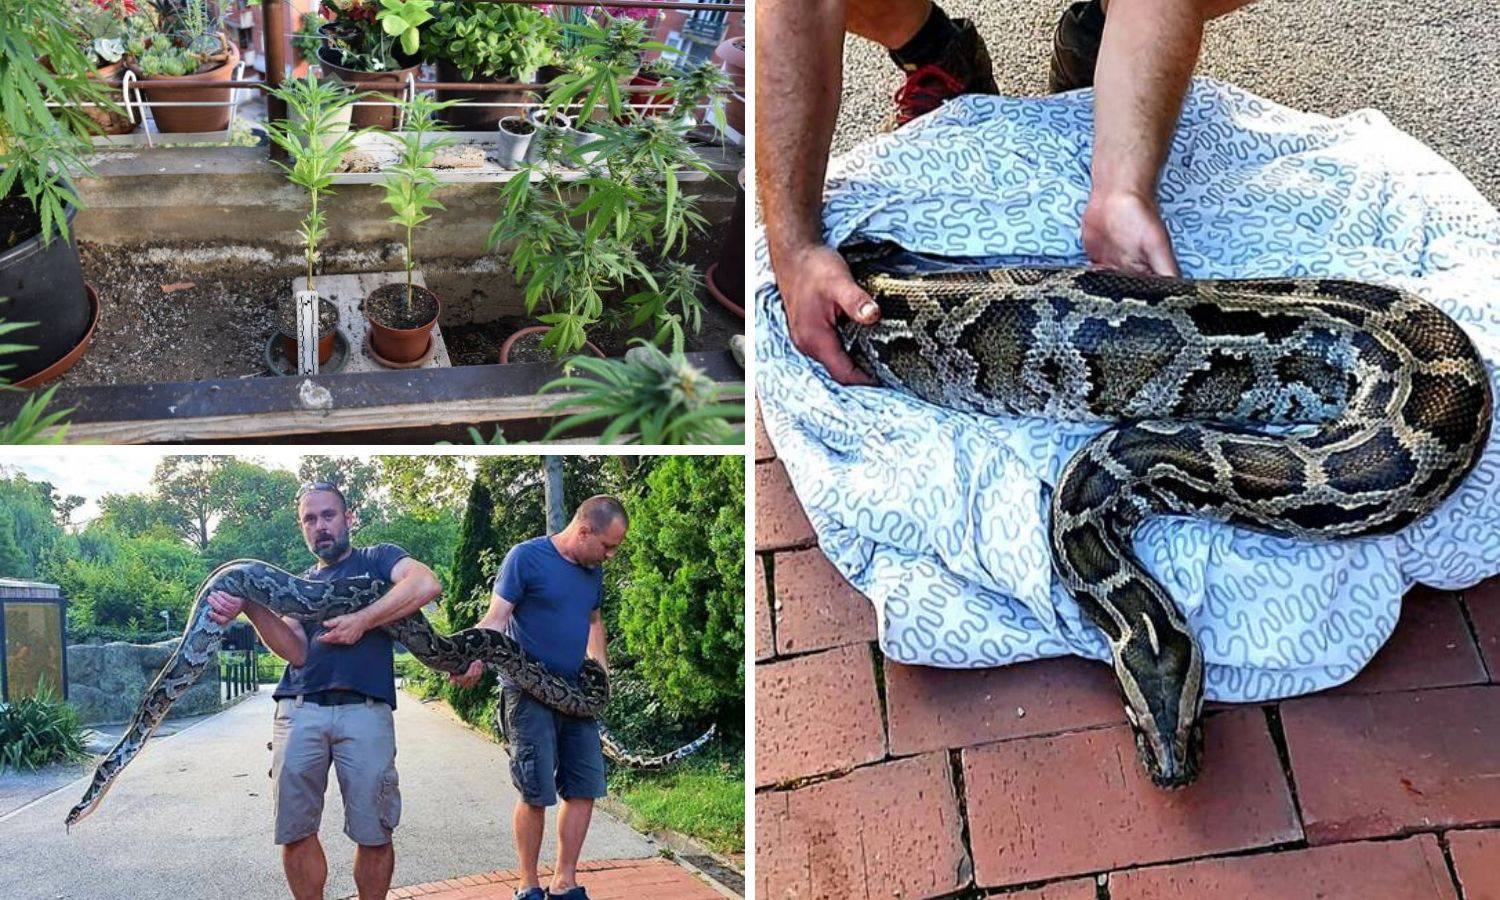 Piton mu 'čuvao' travu: Uzgajao marihuanu u stanu, a zmiju su poslali na čuvanje u Zoološki vrt